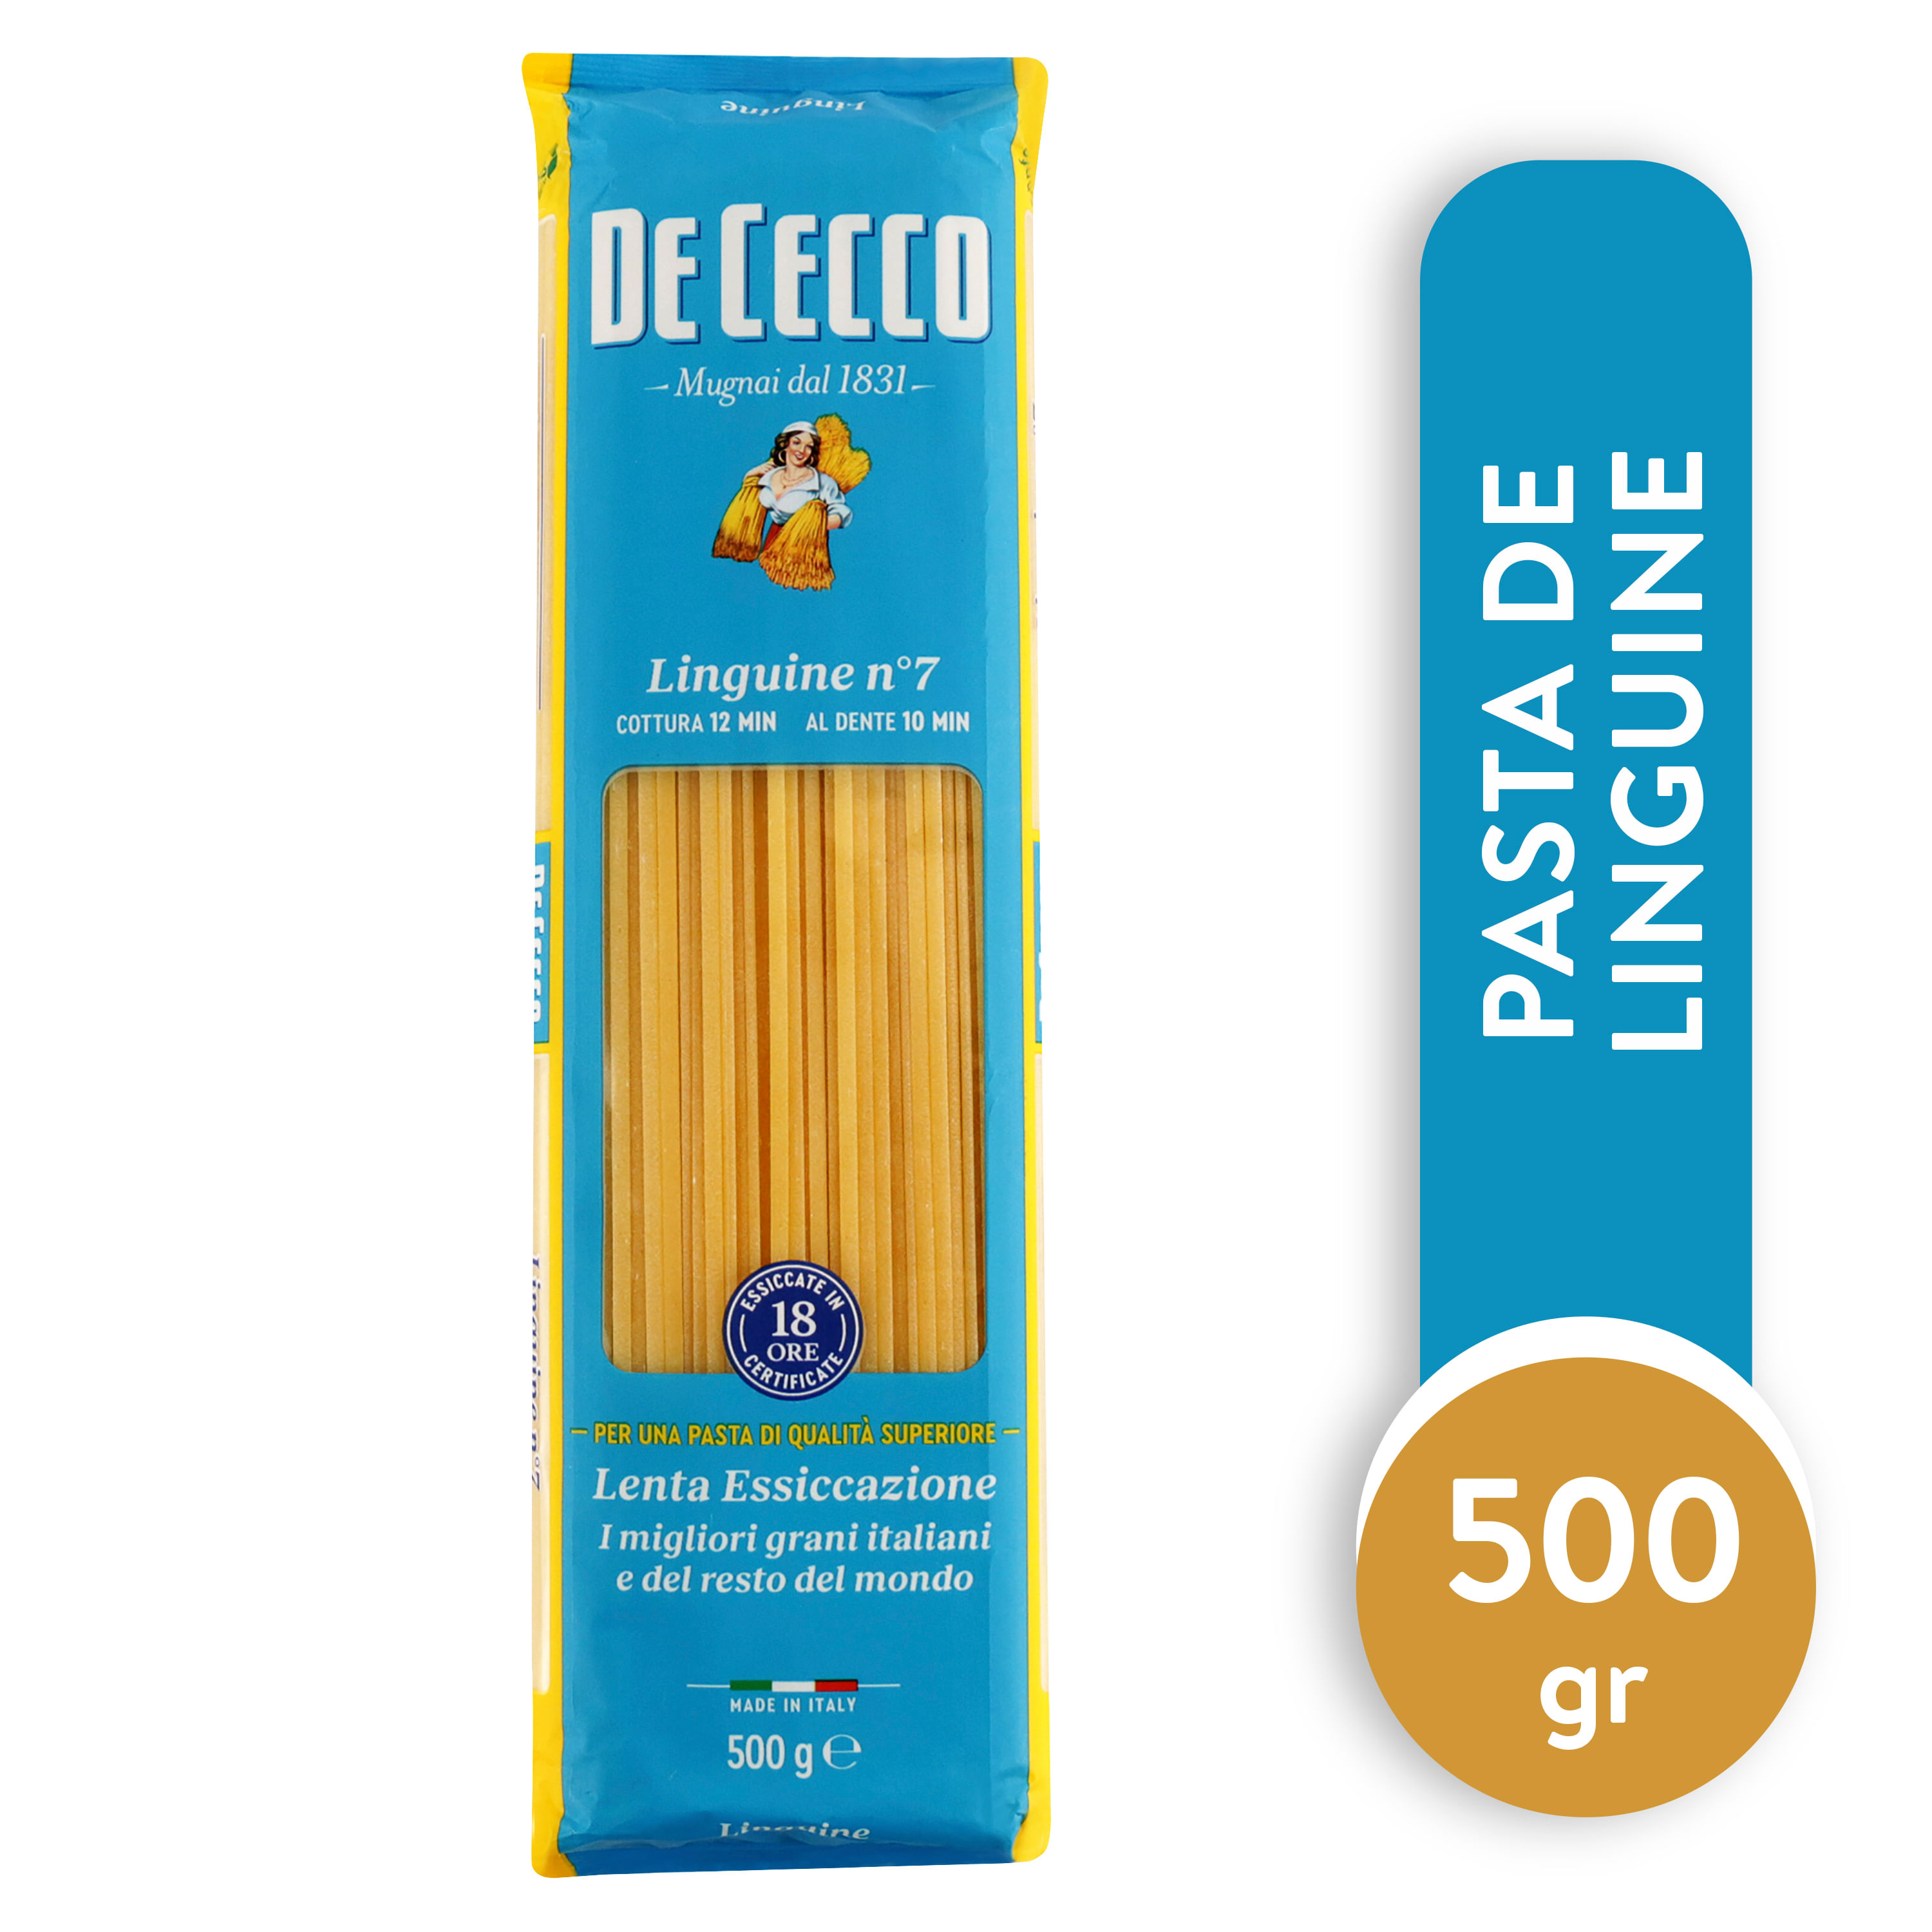 Pasta De Cecco Fusilli Integral de 500 gr